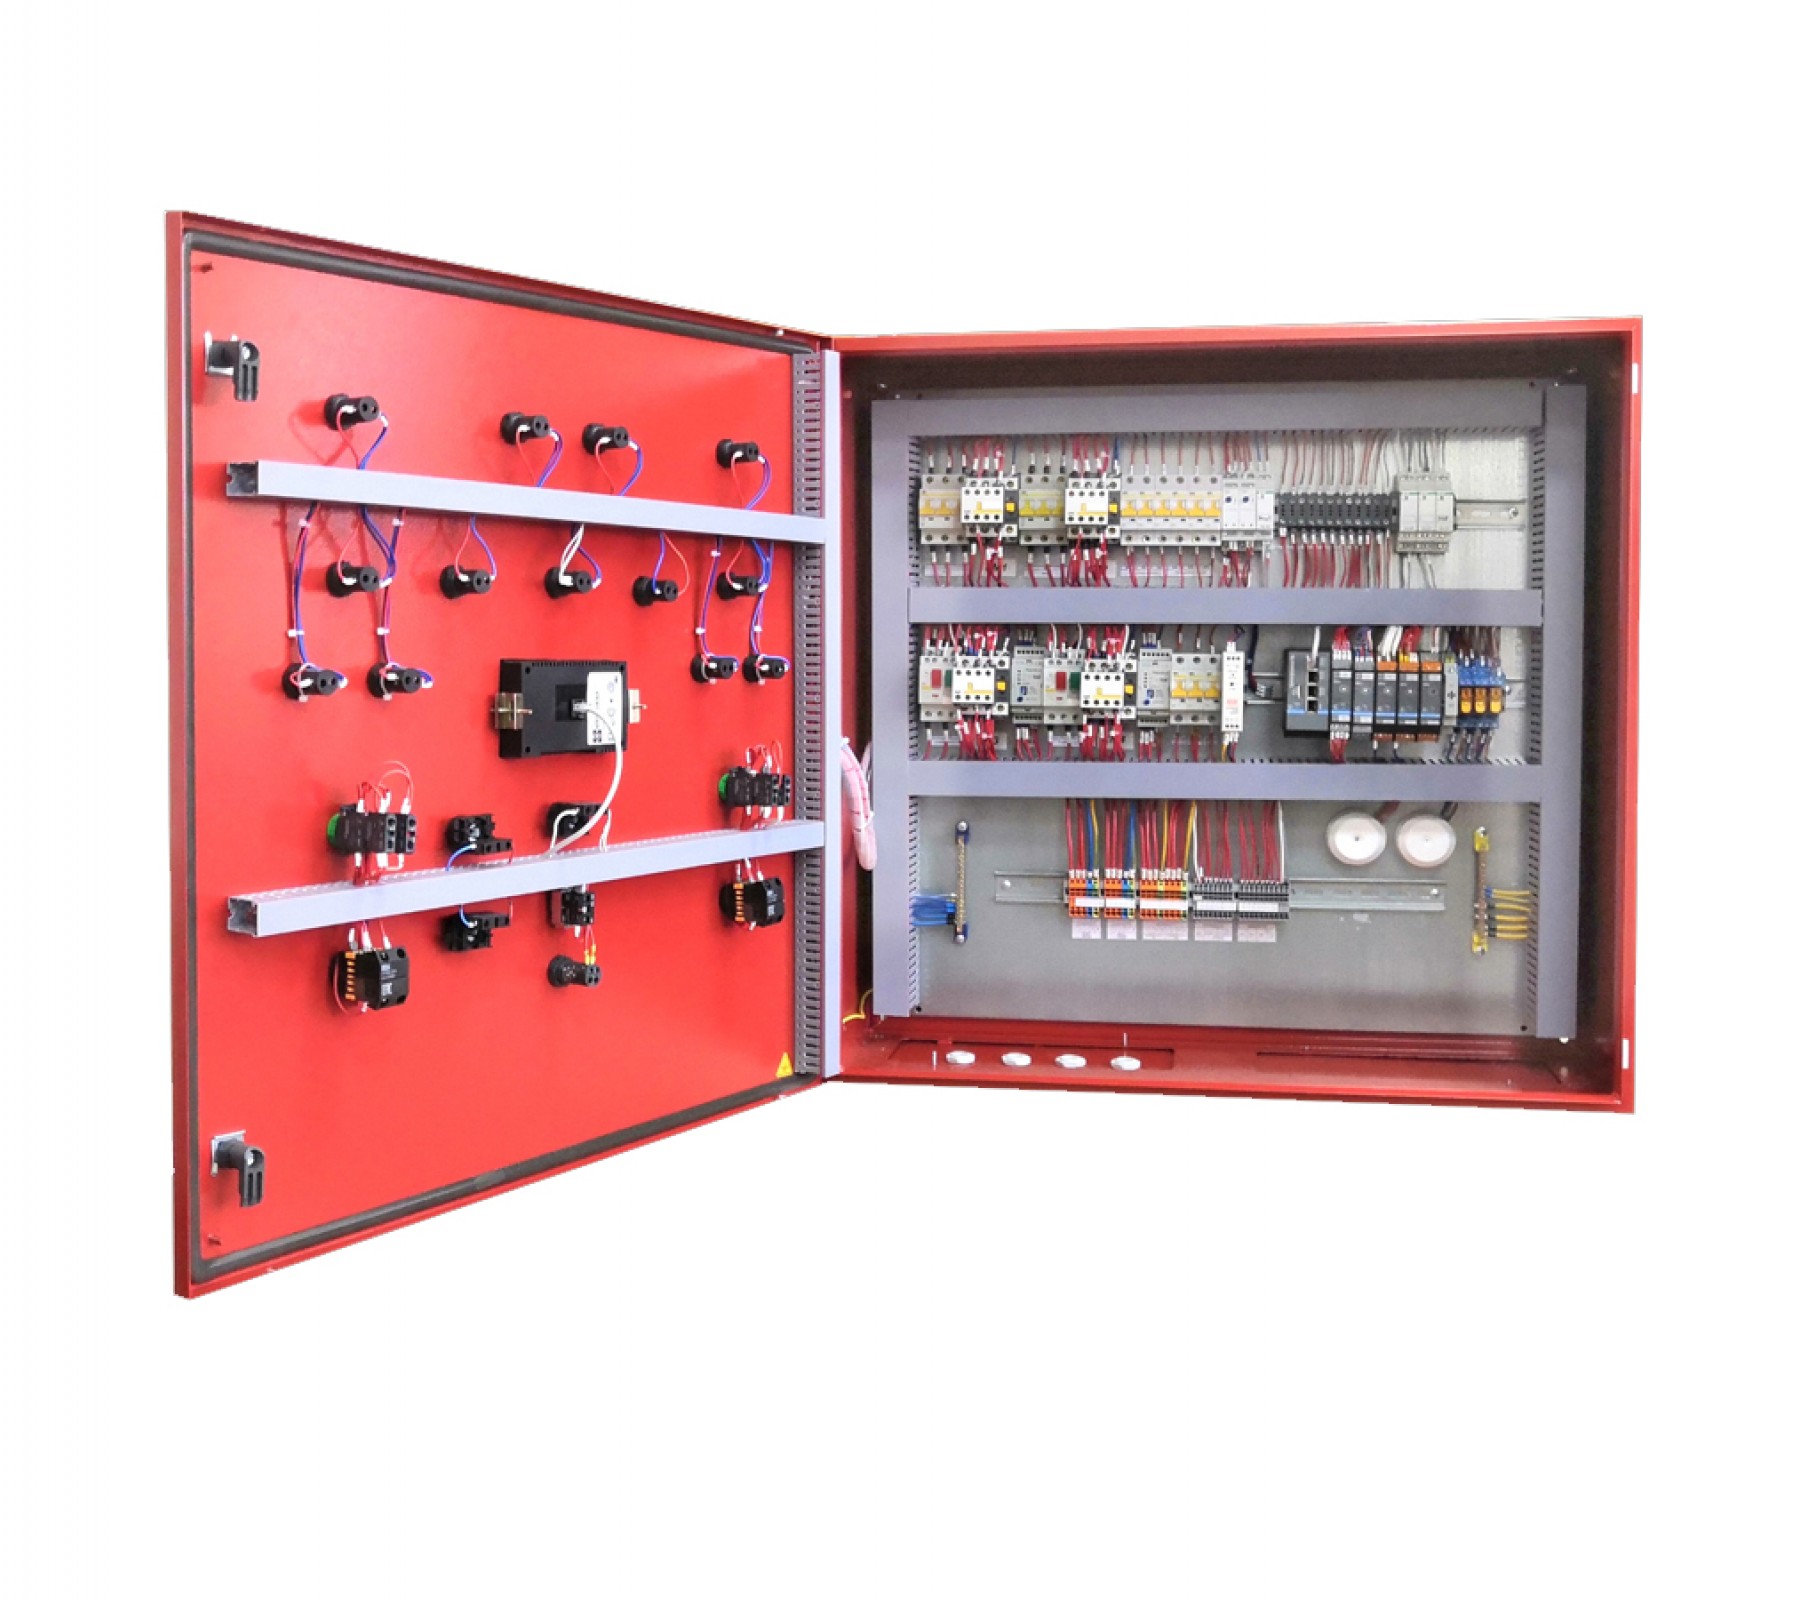 Шкаф управления пожарными насосами для спринклерного пожаротушения ШУПН-З - 5,5 кВт